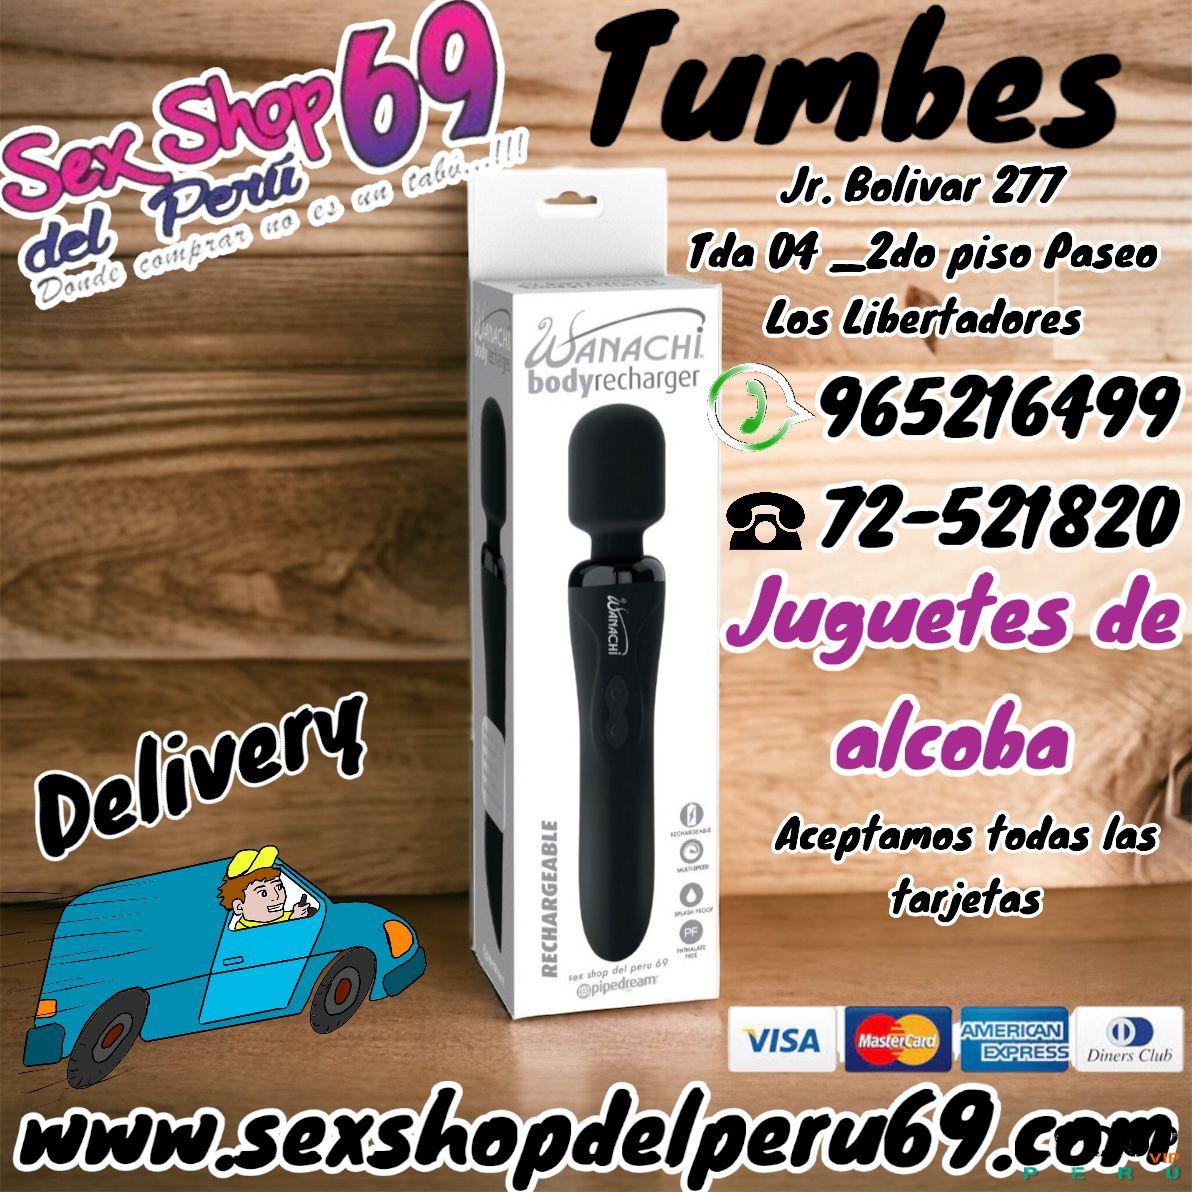 Sex Shop Arequipa: juguetes para adultos_variedad de modelos_lubricantes_retardantes